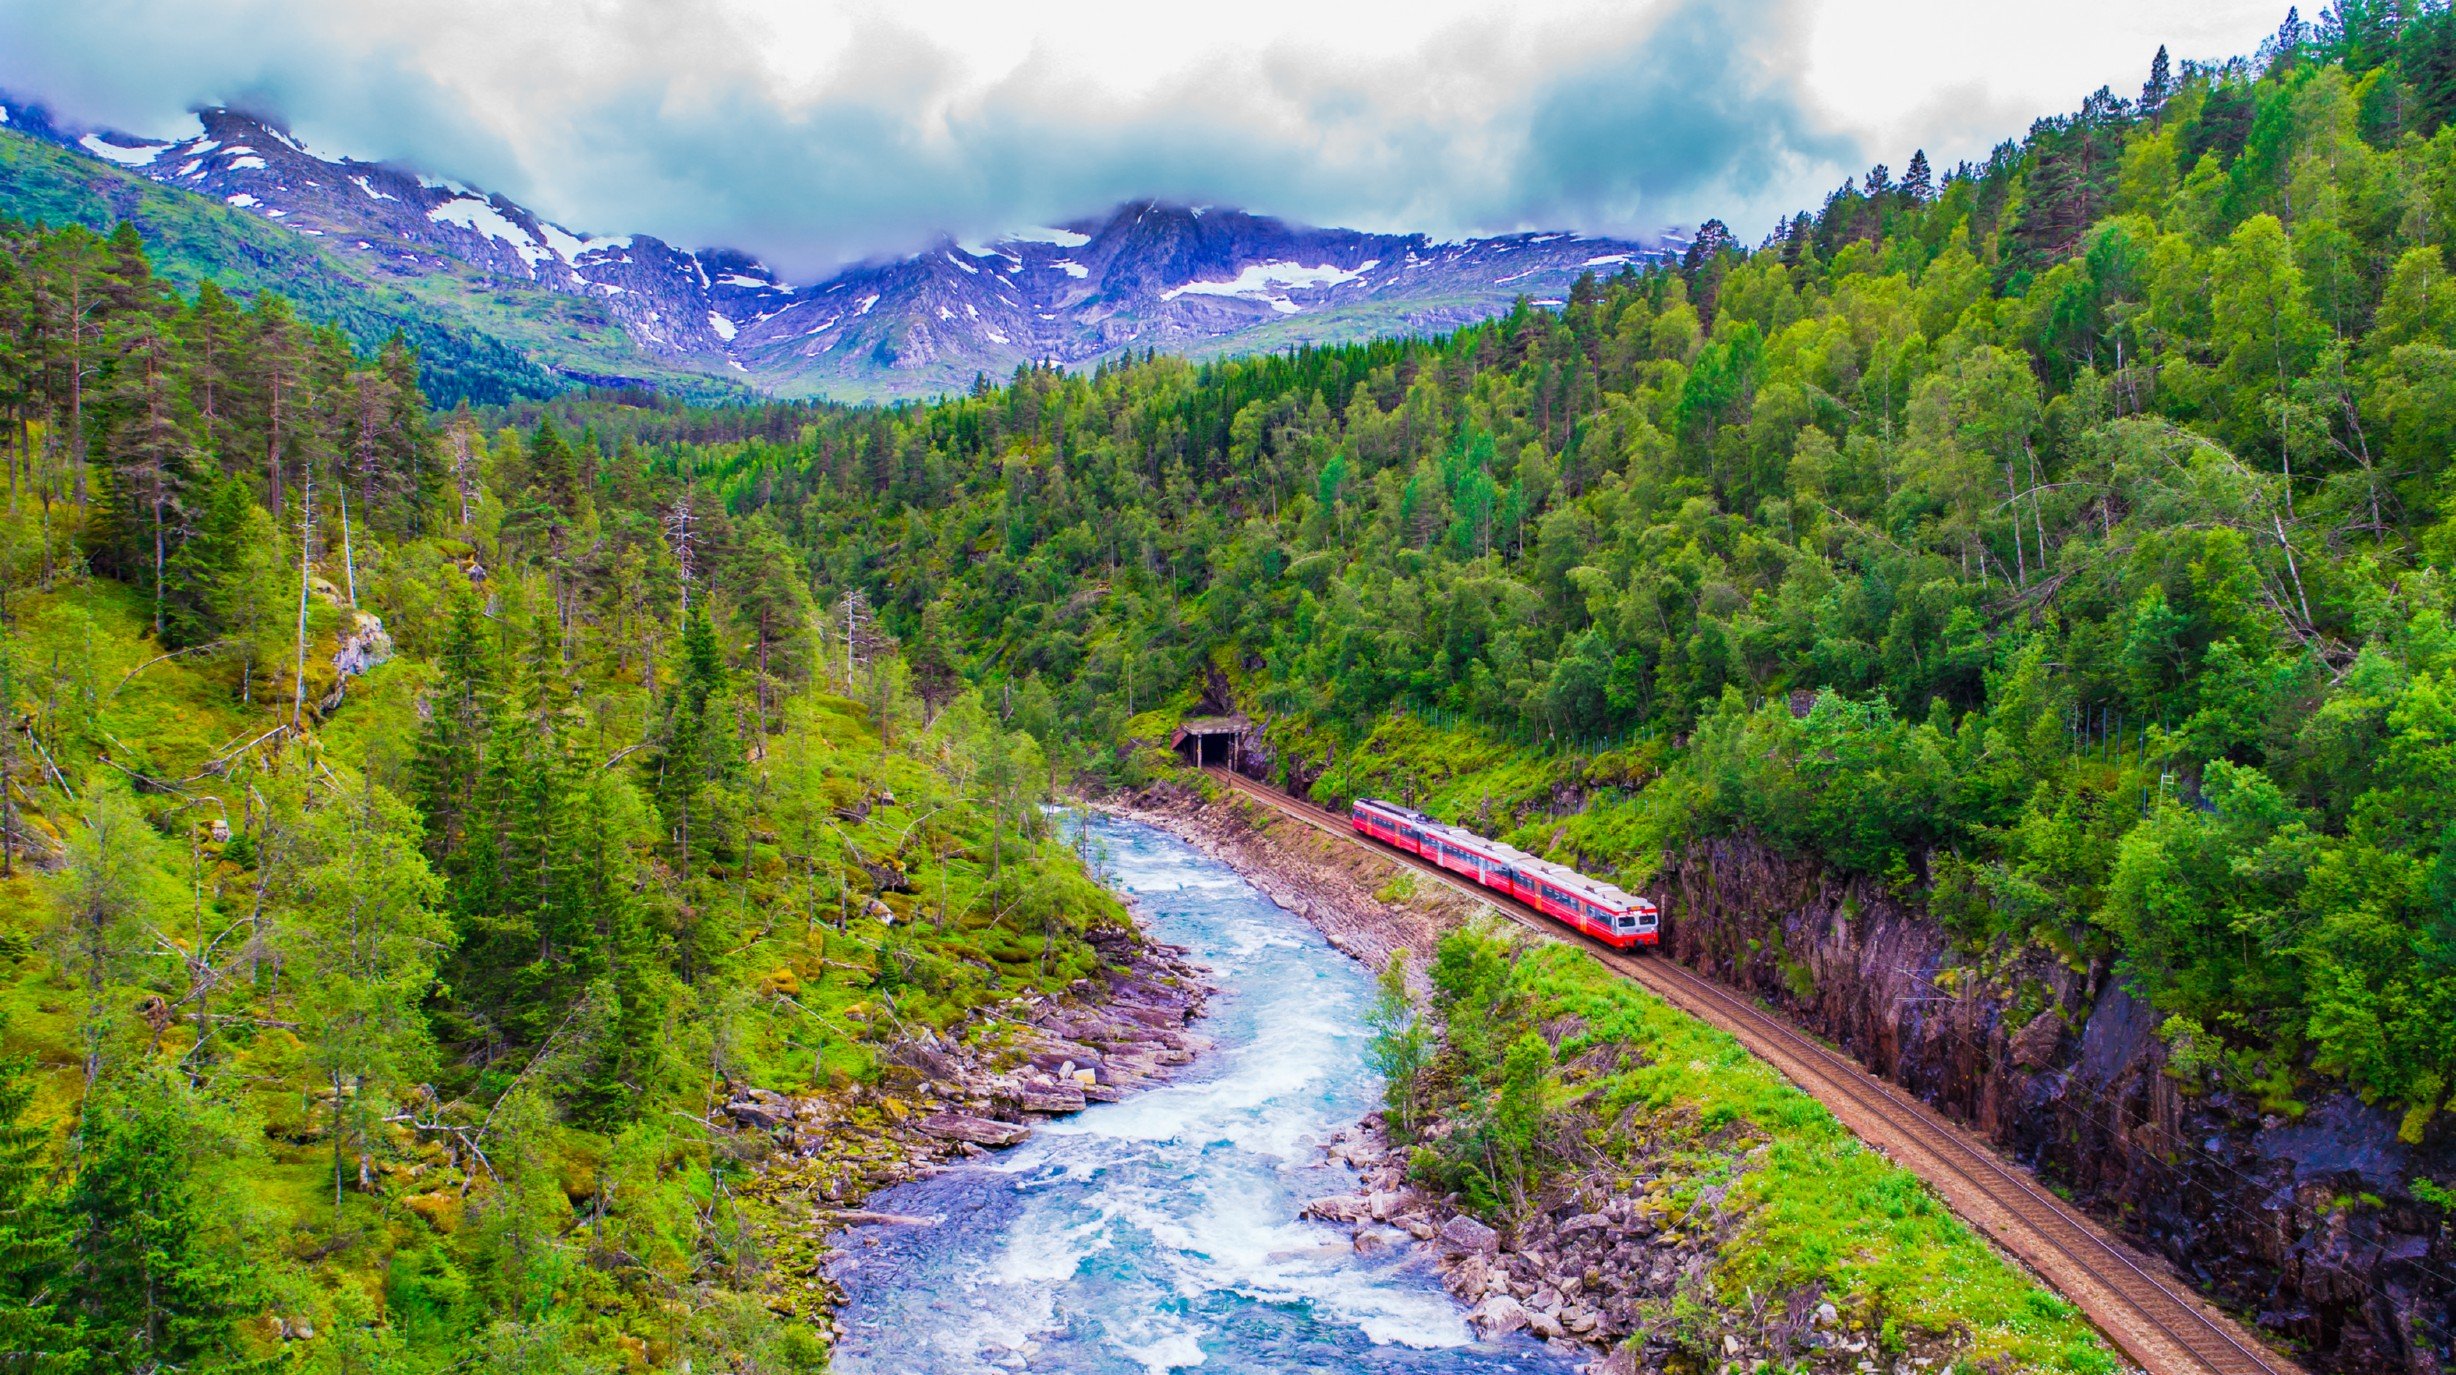 Bezoek bezienswaardige steden in Noorwegen per trein over de mooiste treintrajecten van Europa